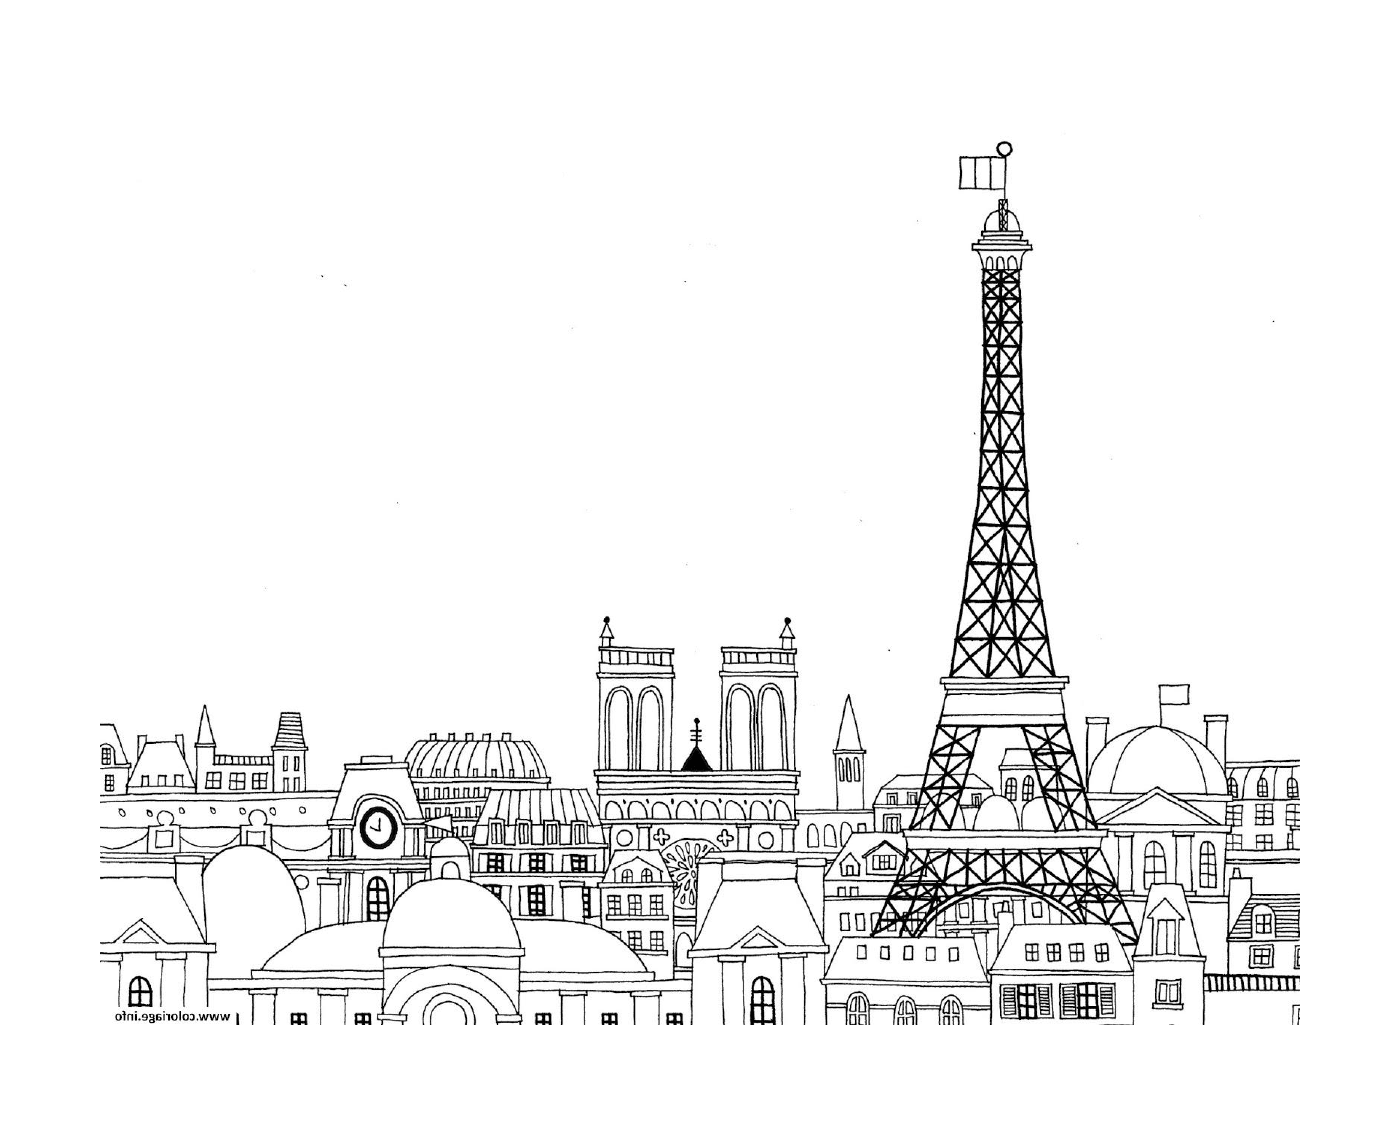  पेरिस शहर का दृश्य 